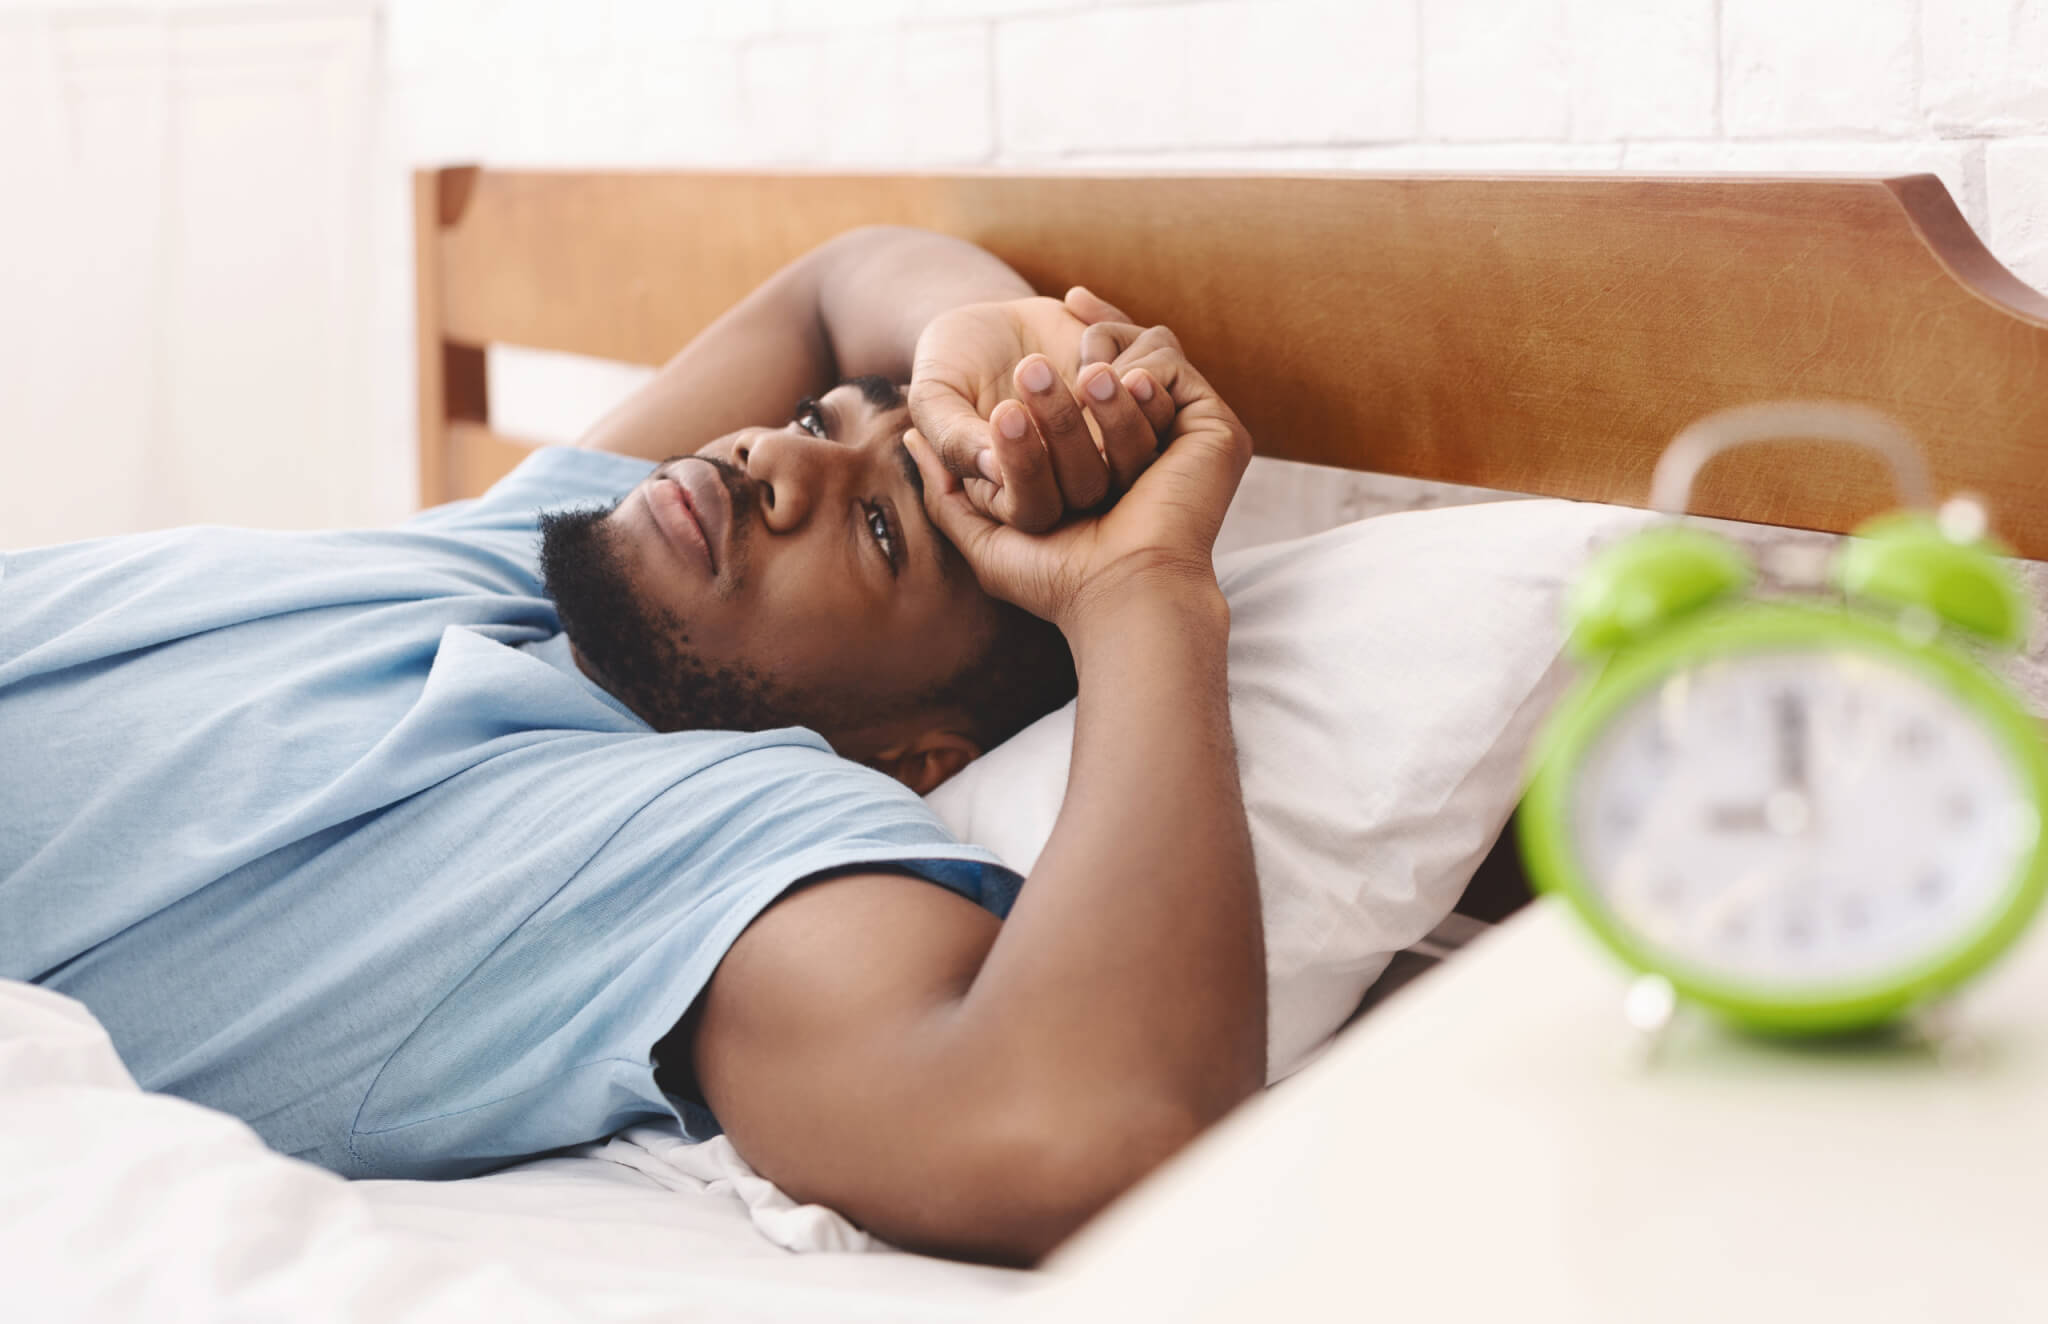 Man awake in bed, can't sleep from insomnia or sleep apnea